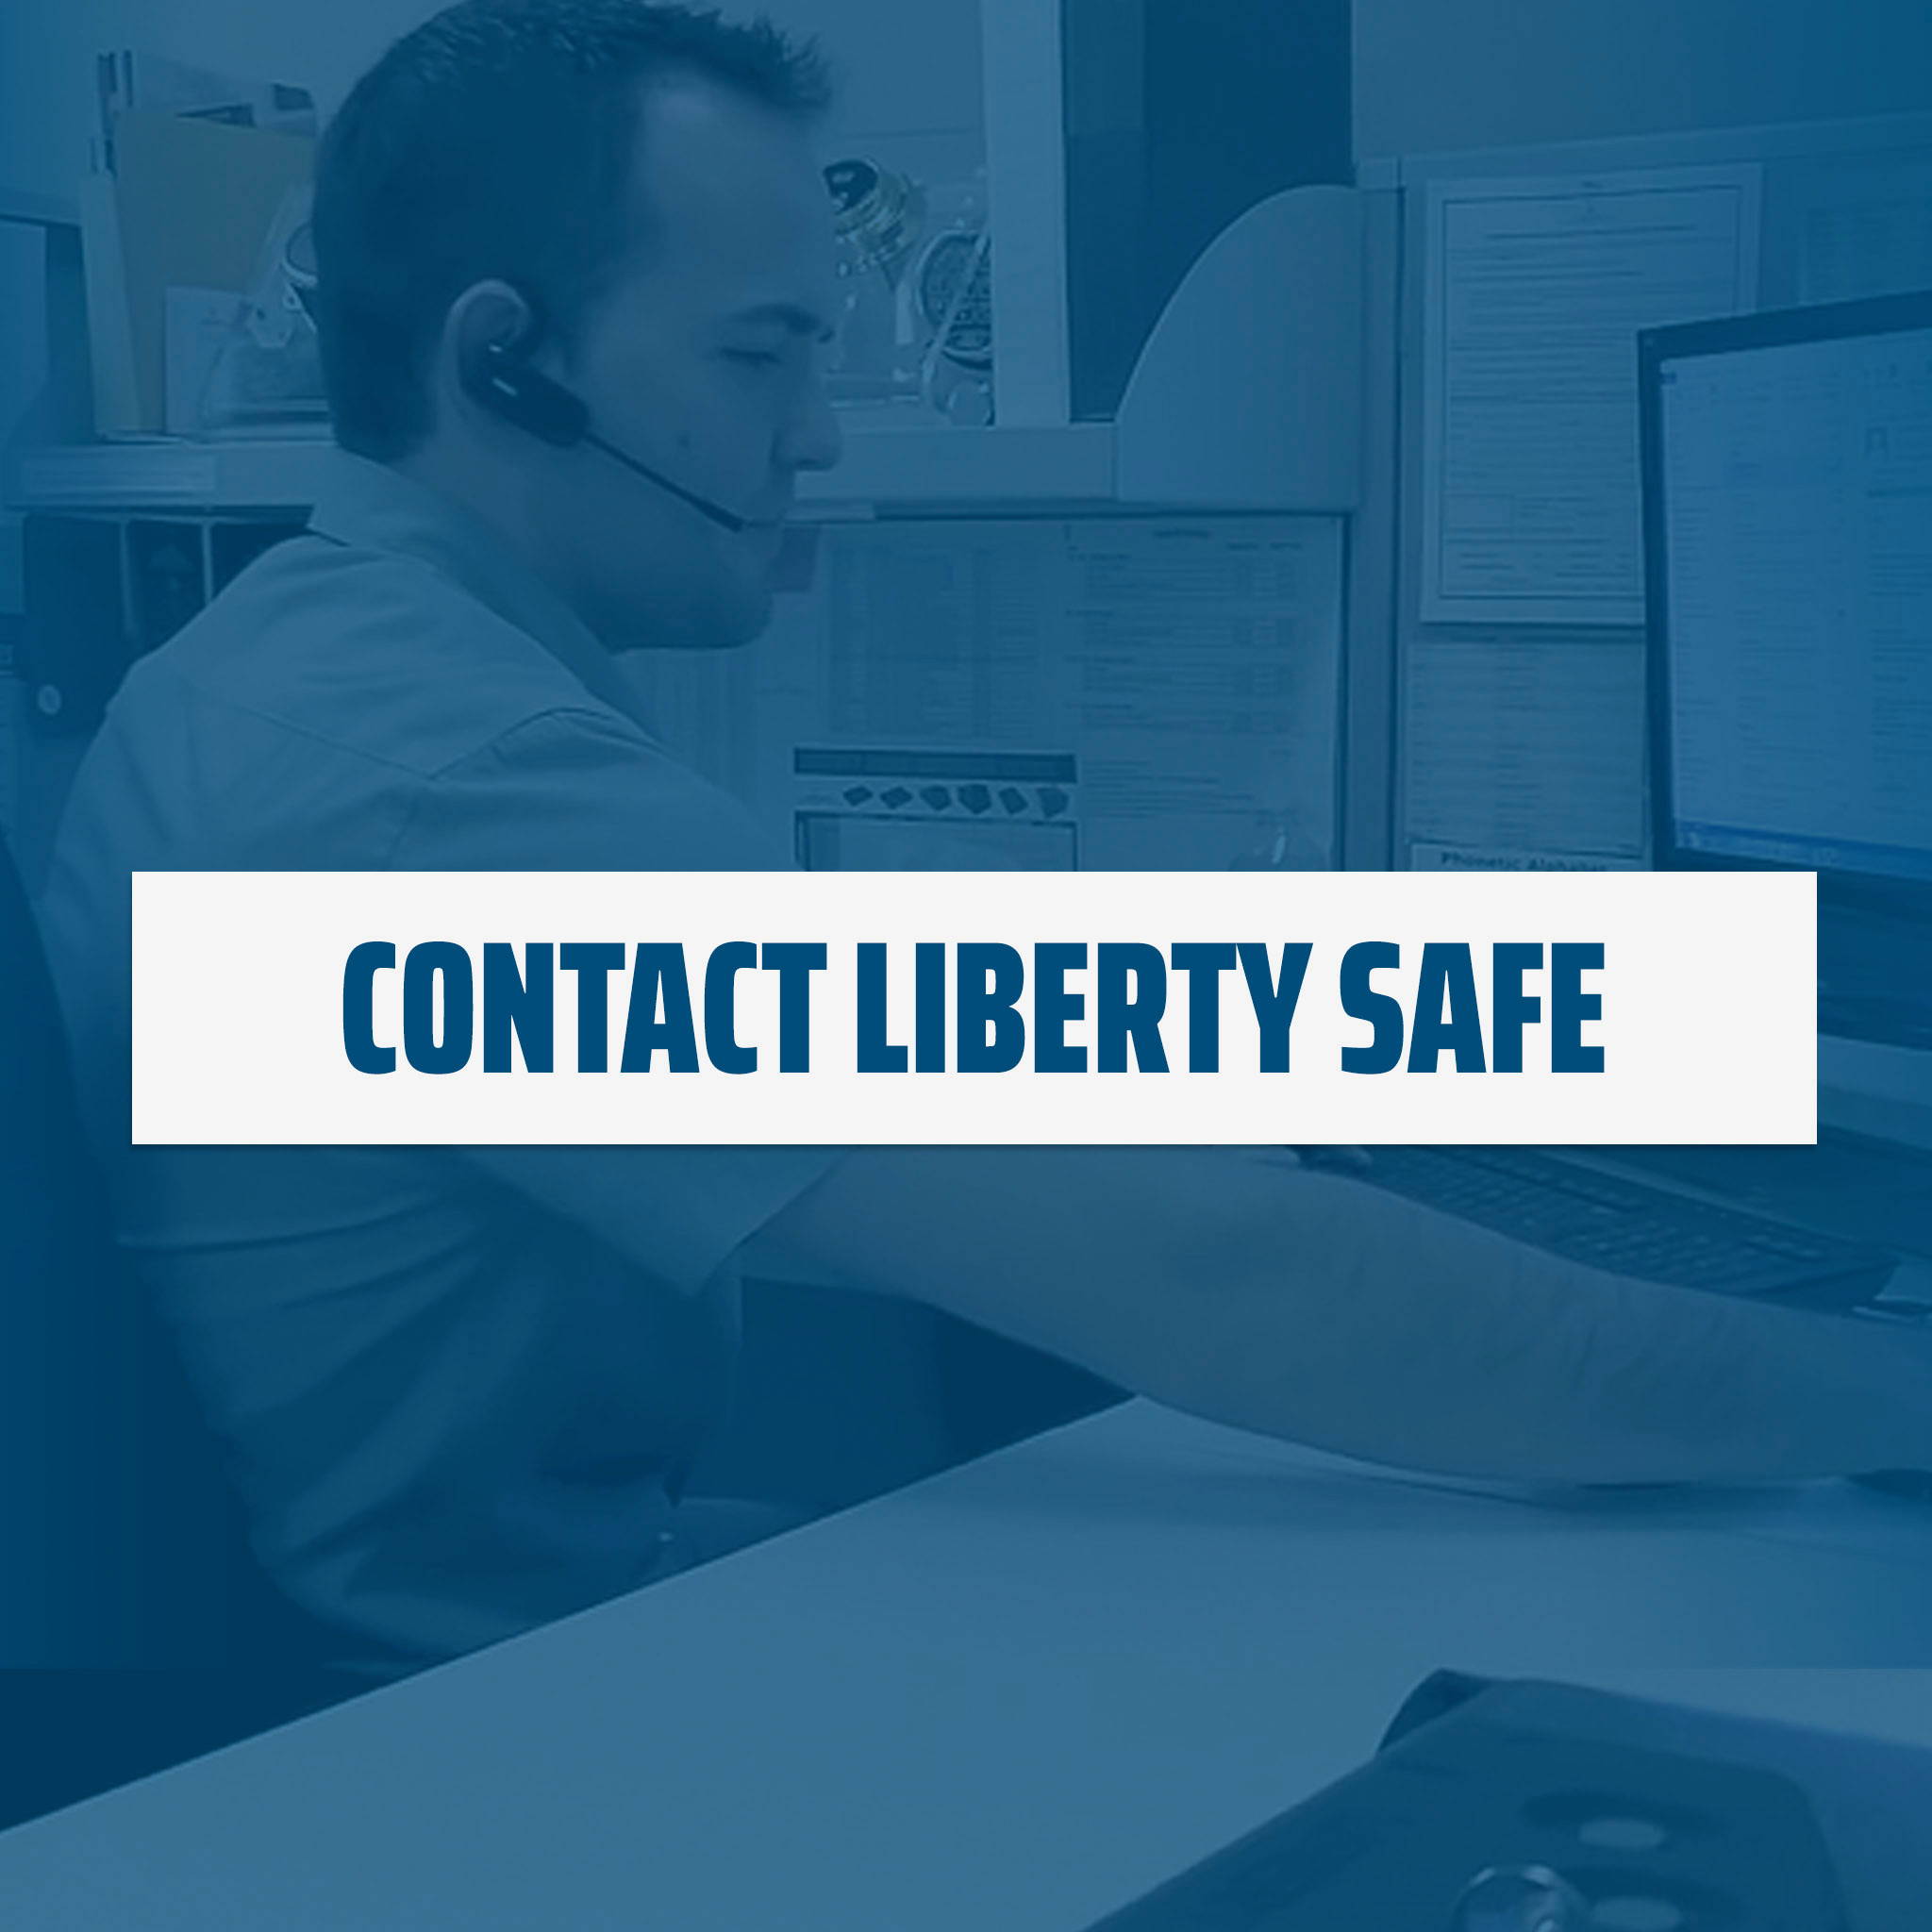 Contact Liberty Safe